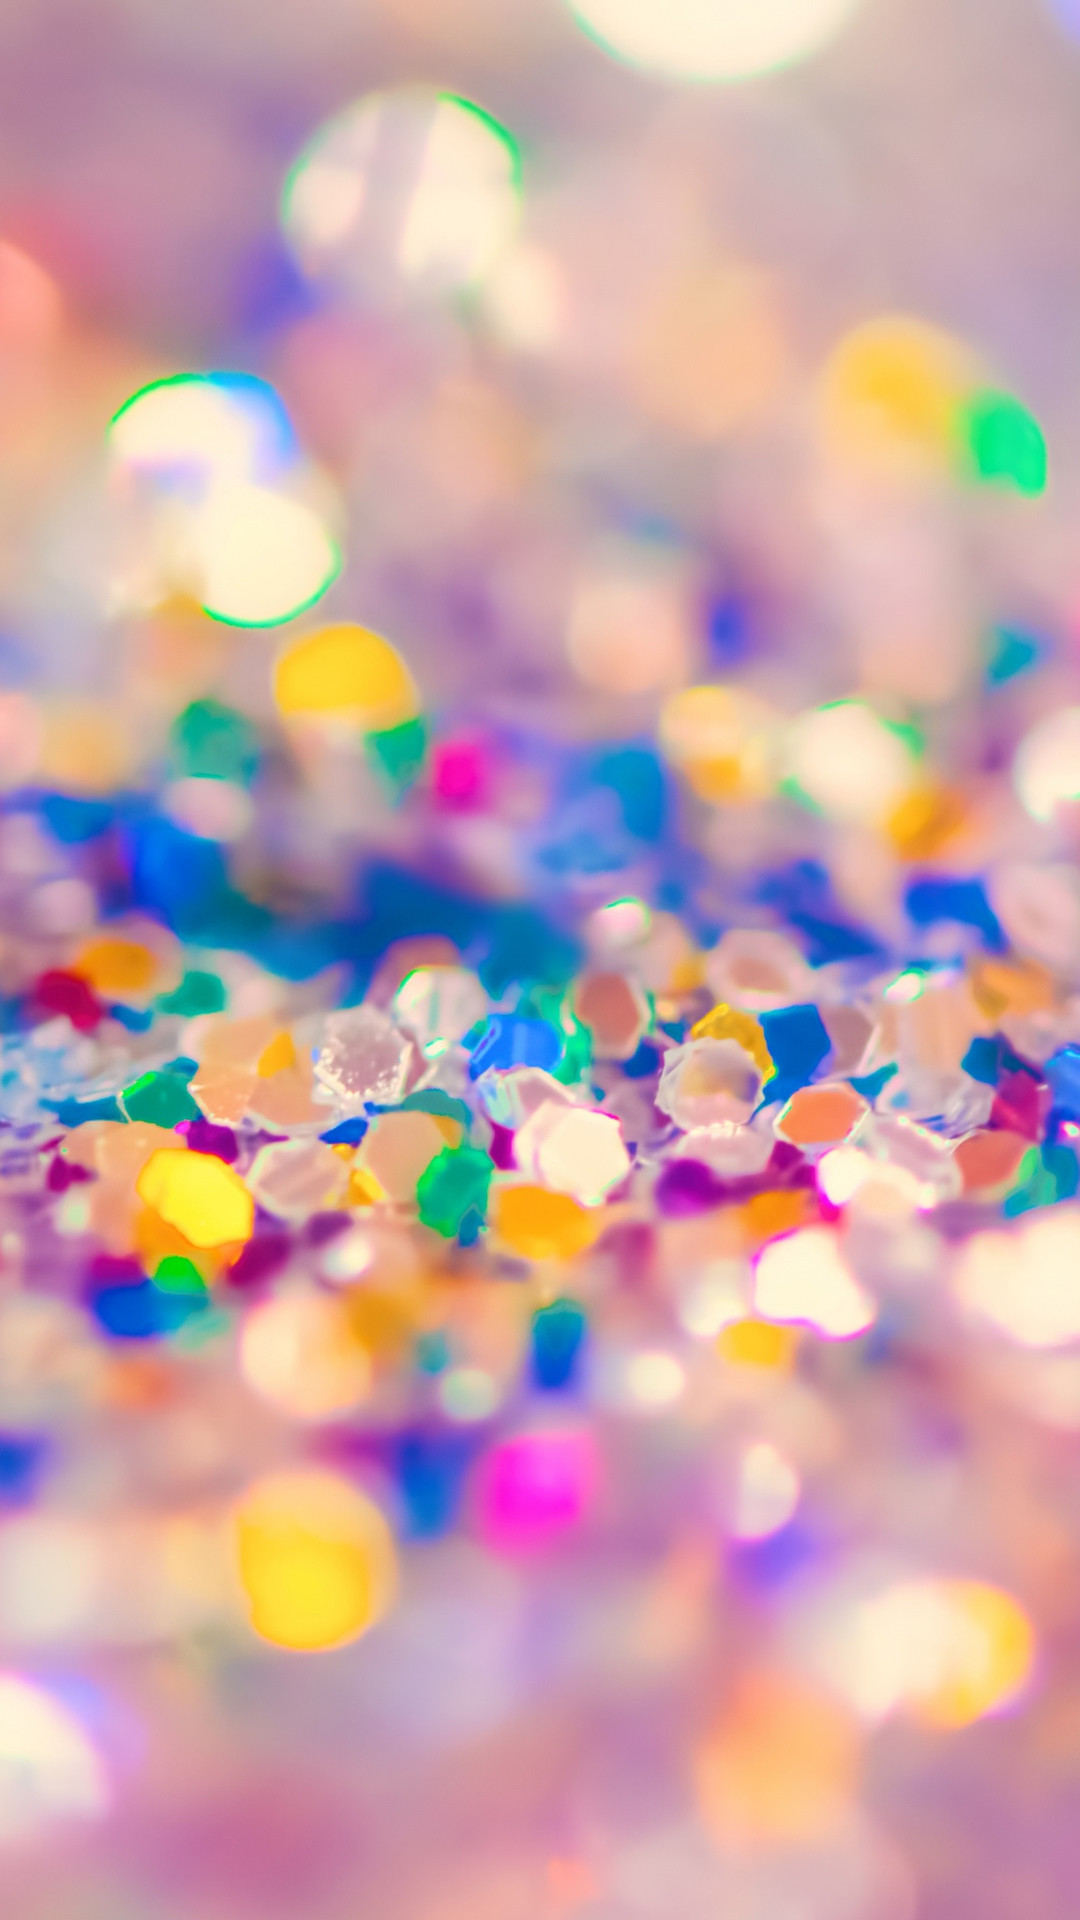 1080x1920 Confetti â Find more Sparkly & Glittery wallpapers for your +